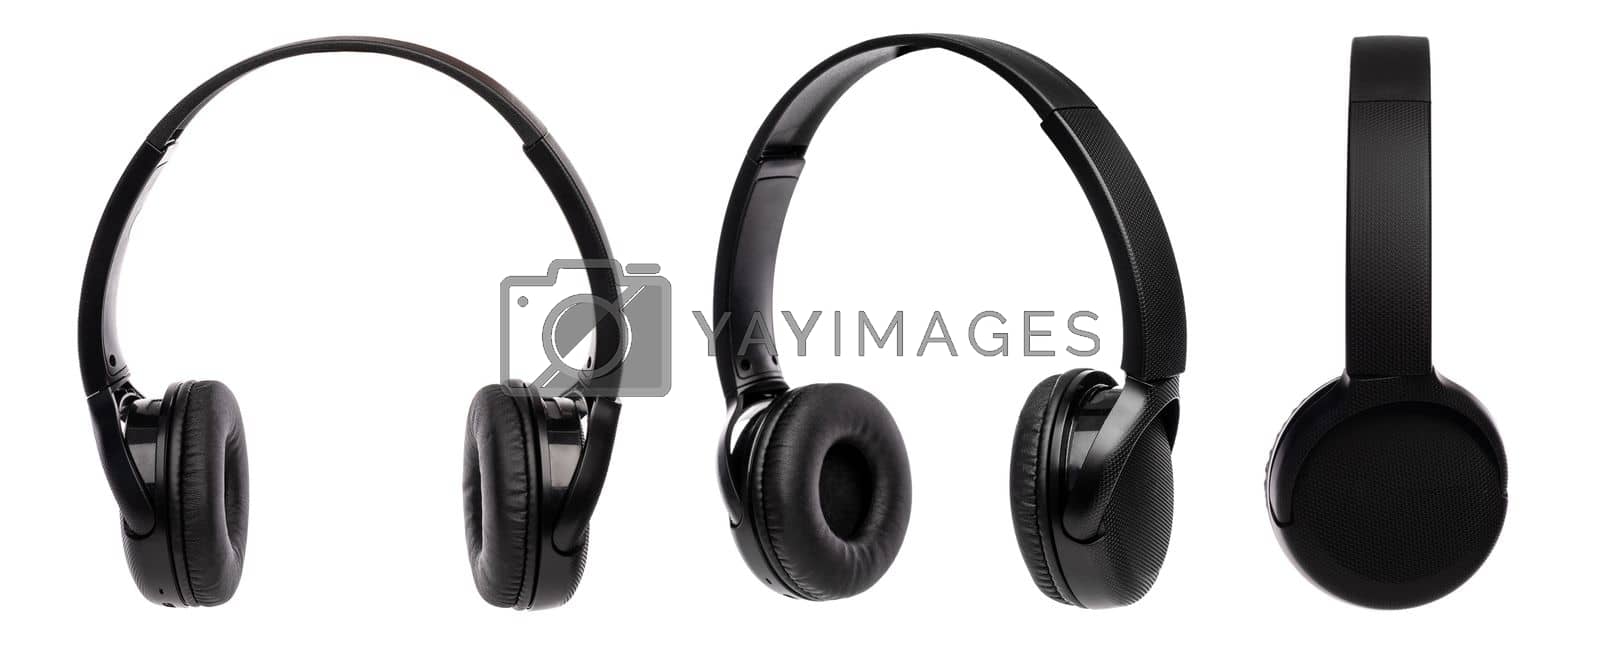 Royalty free image of Black wireless headphones by GekaSkr